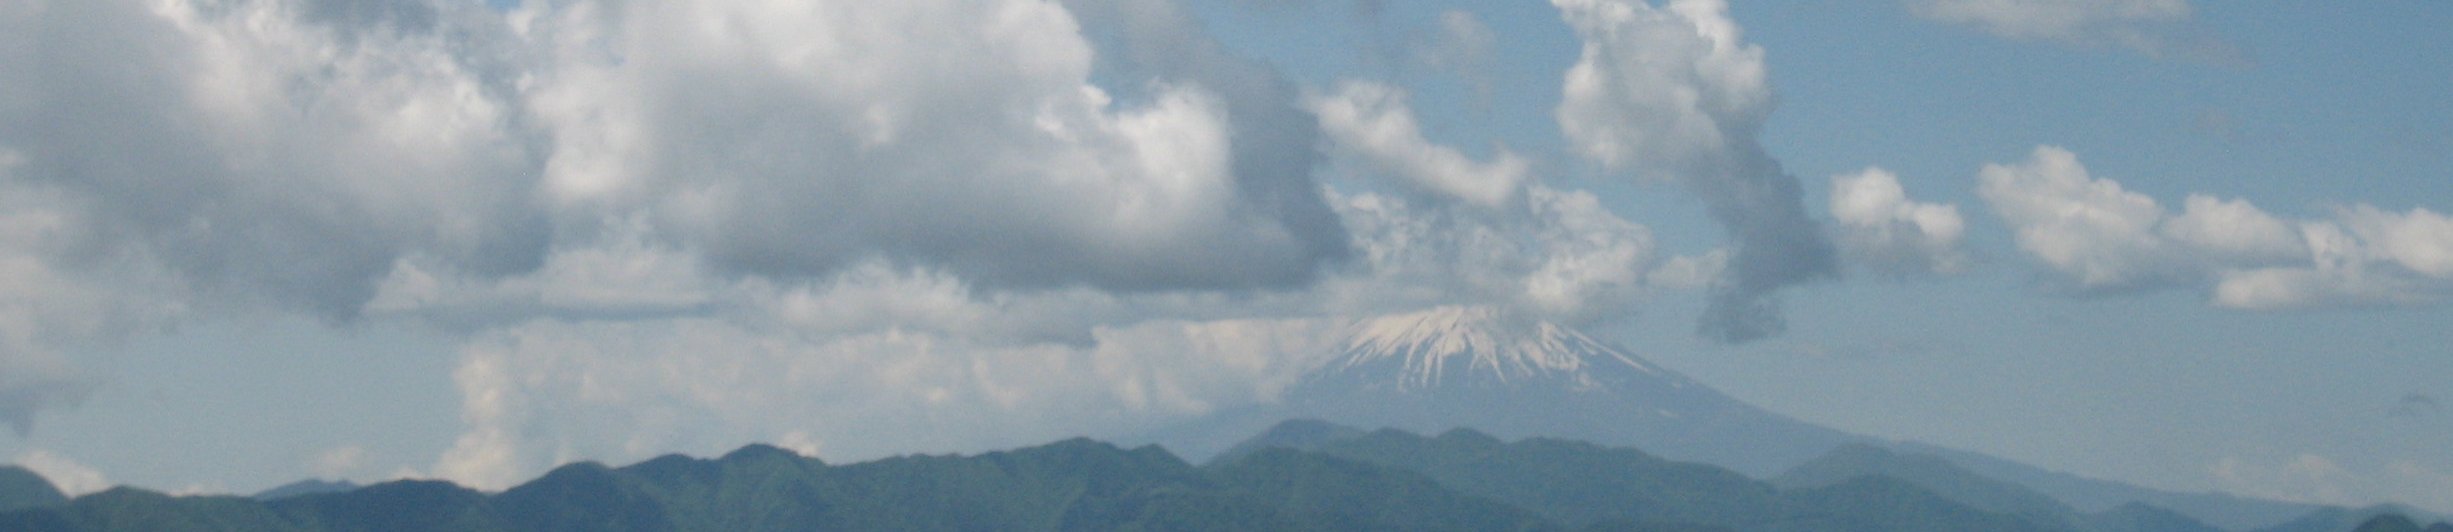 高尾山 banner image